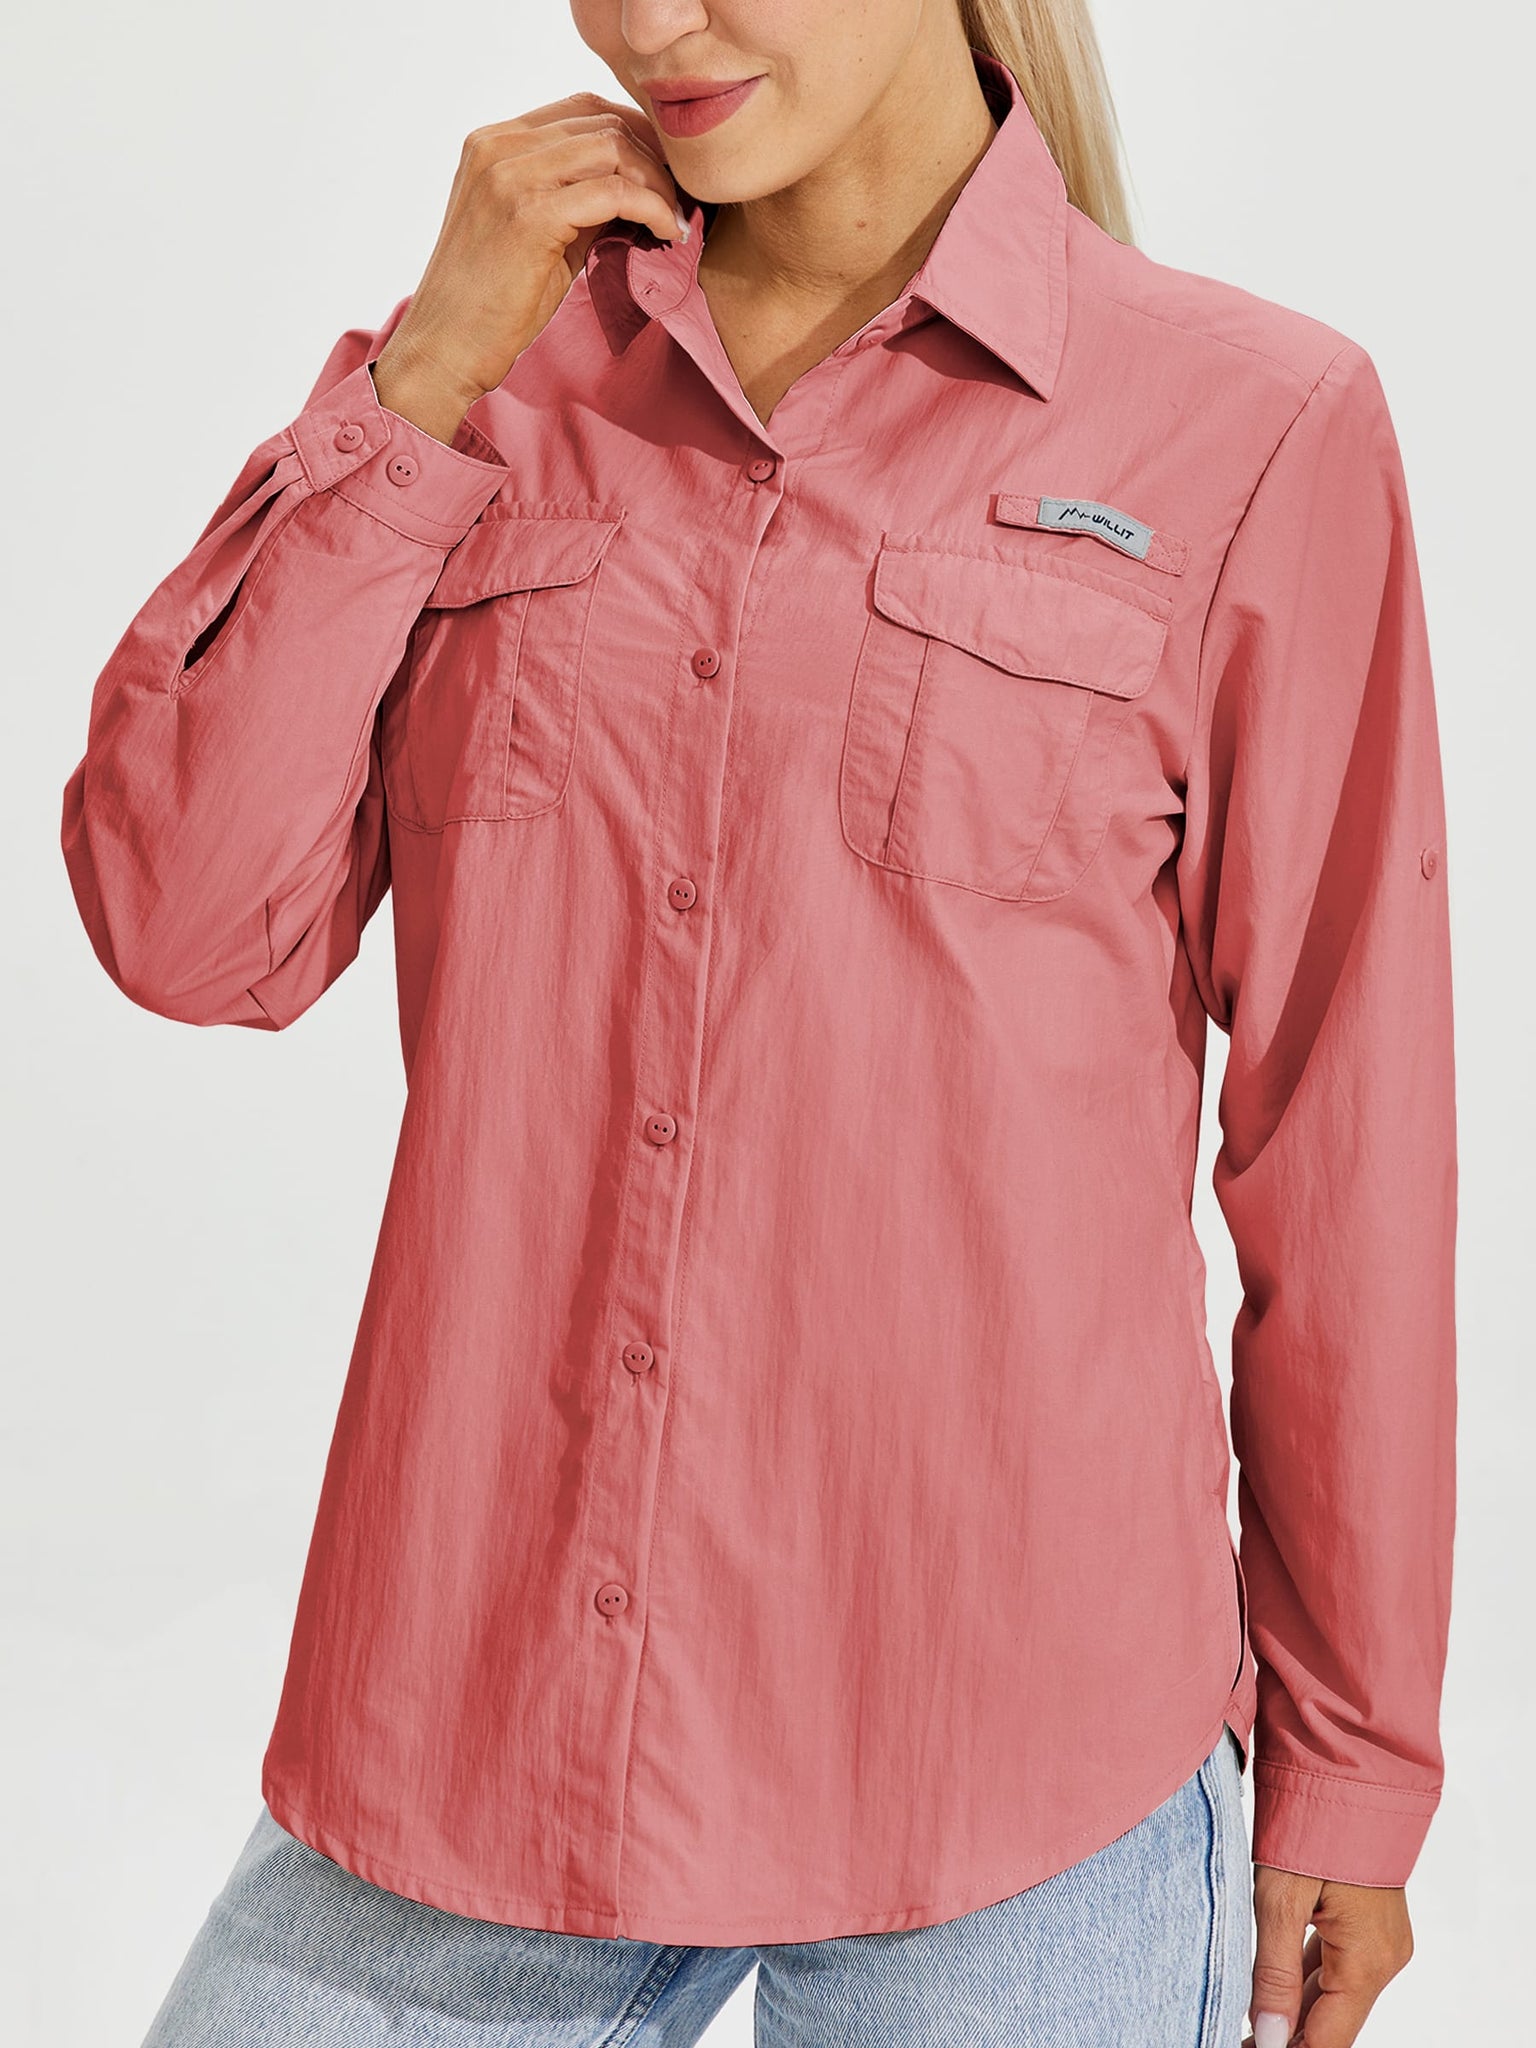 Women's Long Sleeve Fishing Shirt_Pink_model1